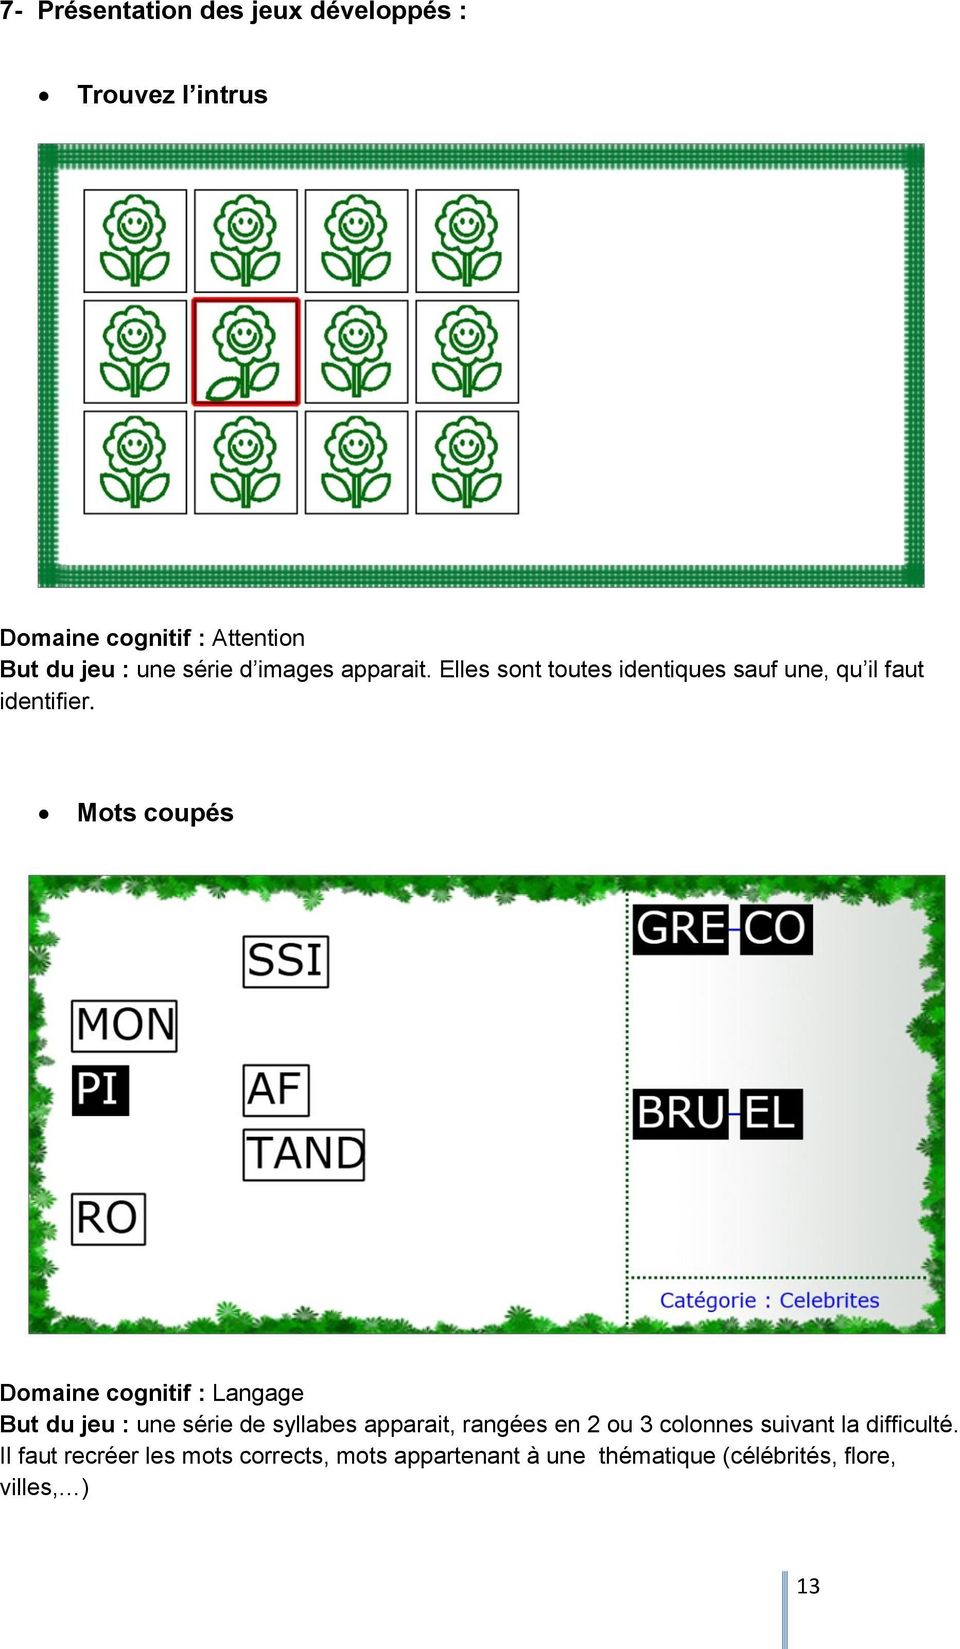 Mots coupés Domaine cognitif : Langage But du jeu : une série de syllabes apparait, rangées en 2 ou 3